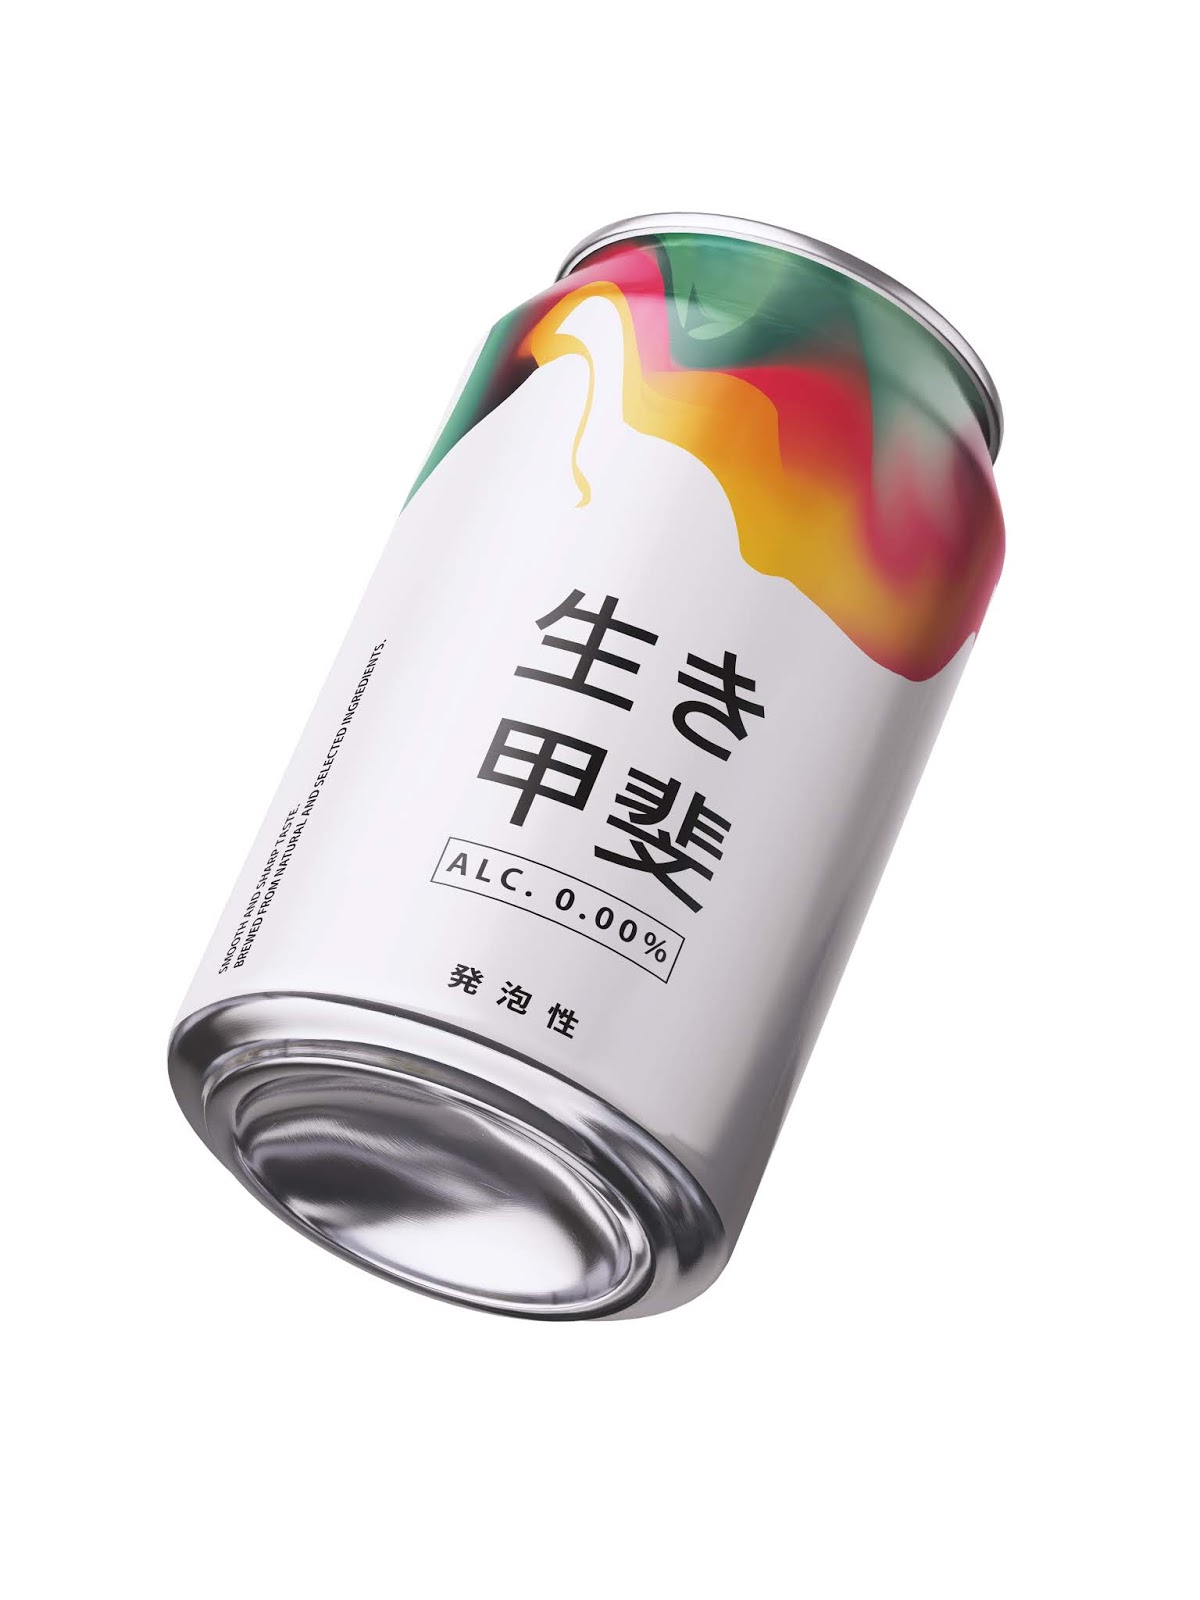 日本Ikigai发泡酒包装设计